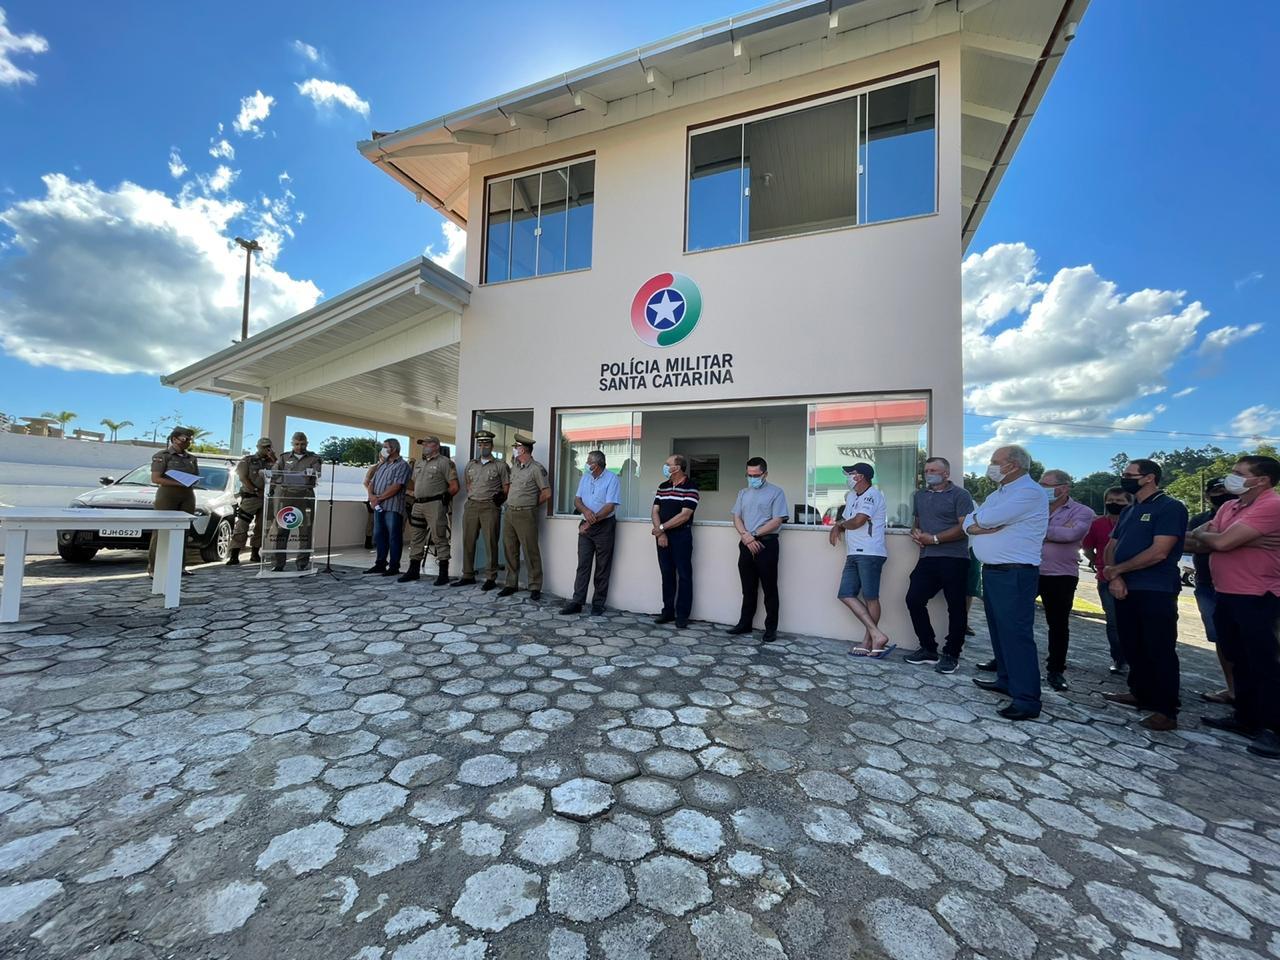 Polícia Militar de Imbuia tem nova sede